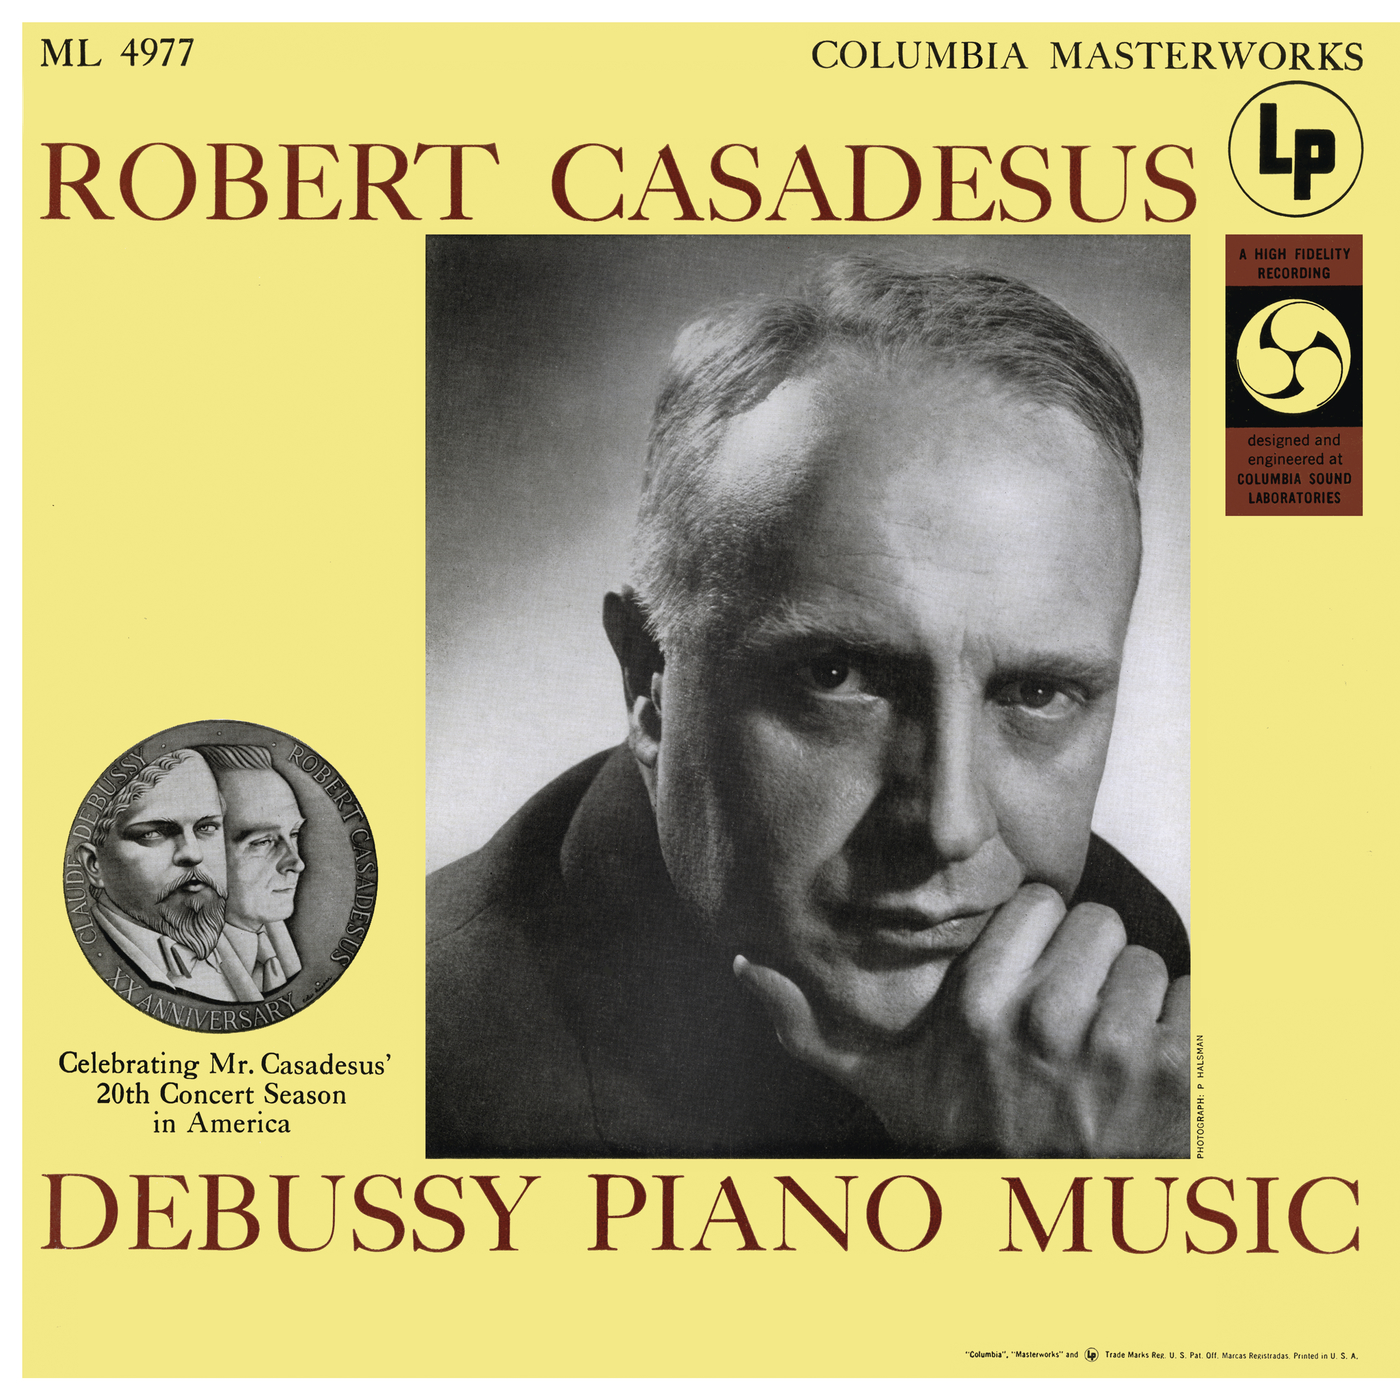 Casadesus Plays Piano Music of Debussy